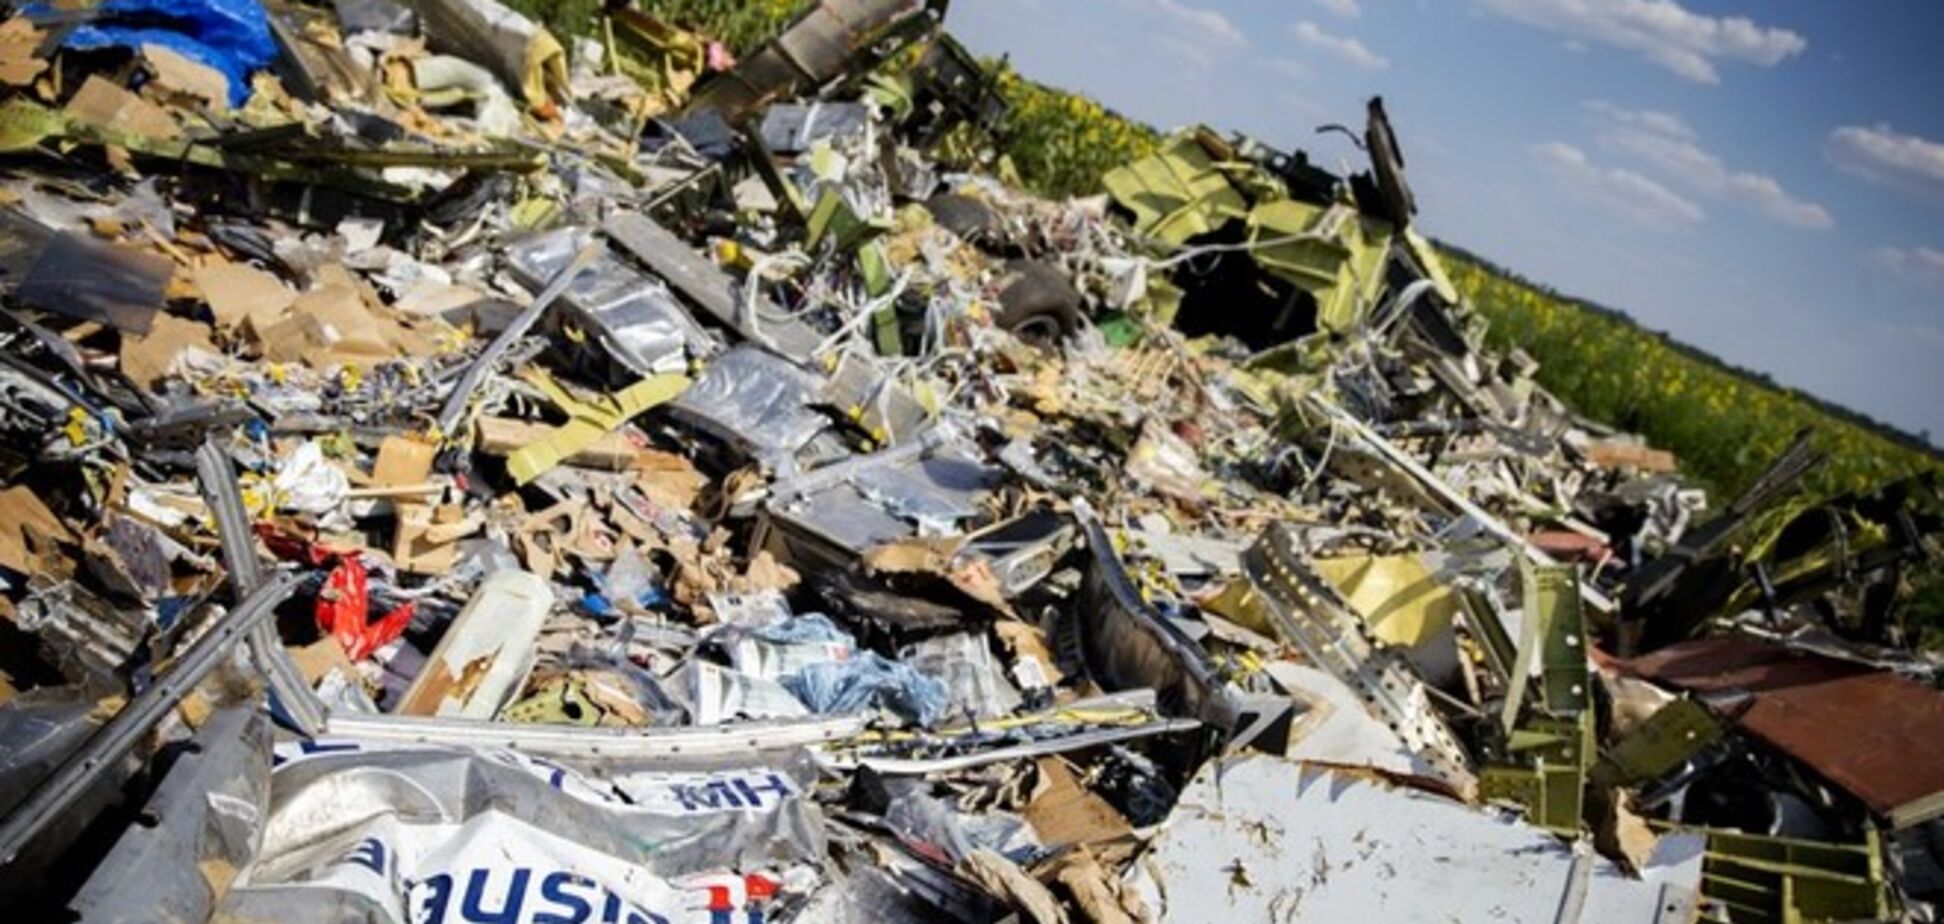 Террористы заявили о передаче киевским властям всех останков и личных вещей пассажиров сбитого Boeing-777